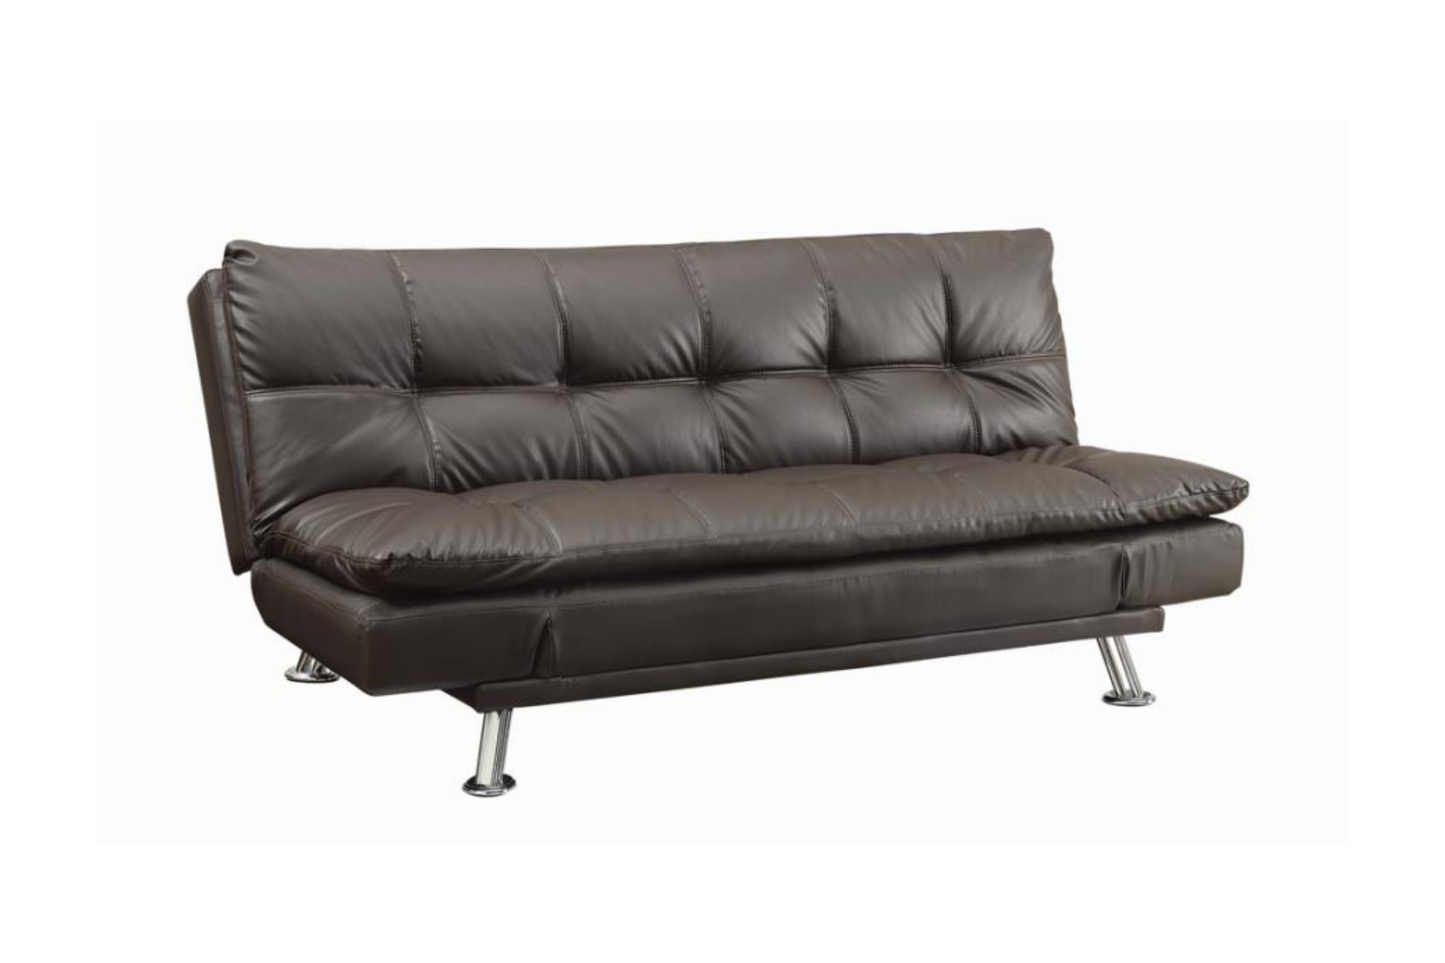 Cefalú Tufted Back Upholstered Sofa Bed Model 18300321